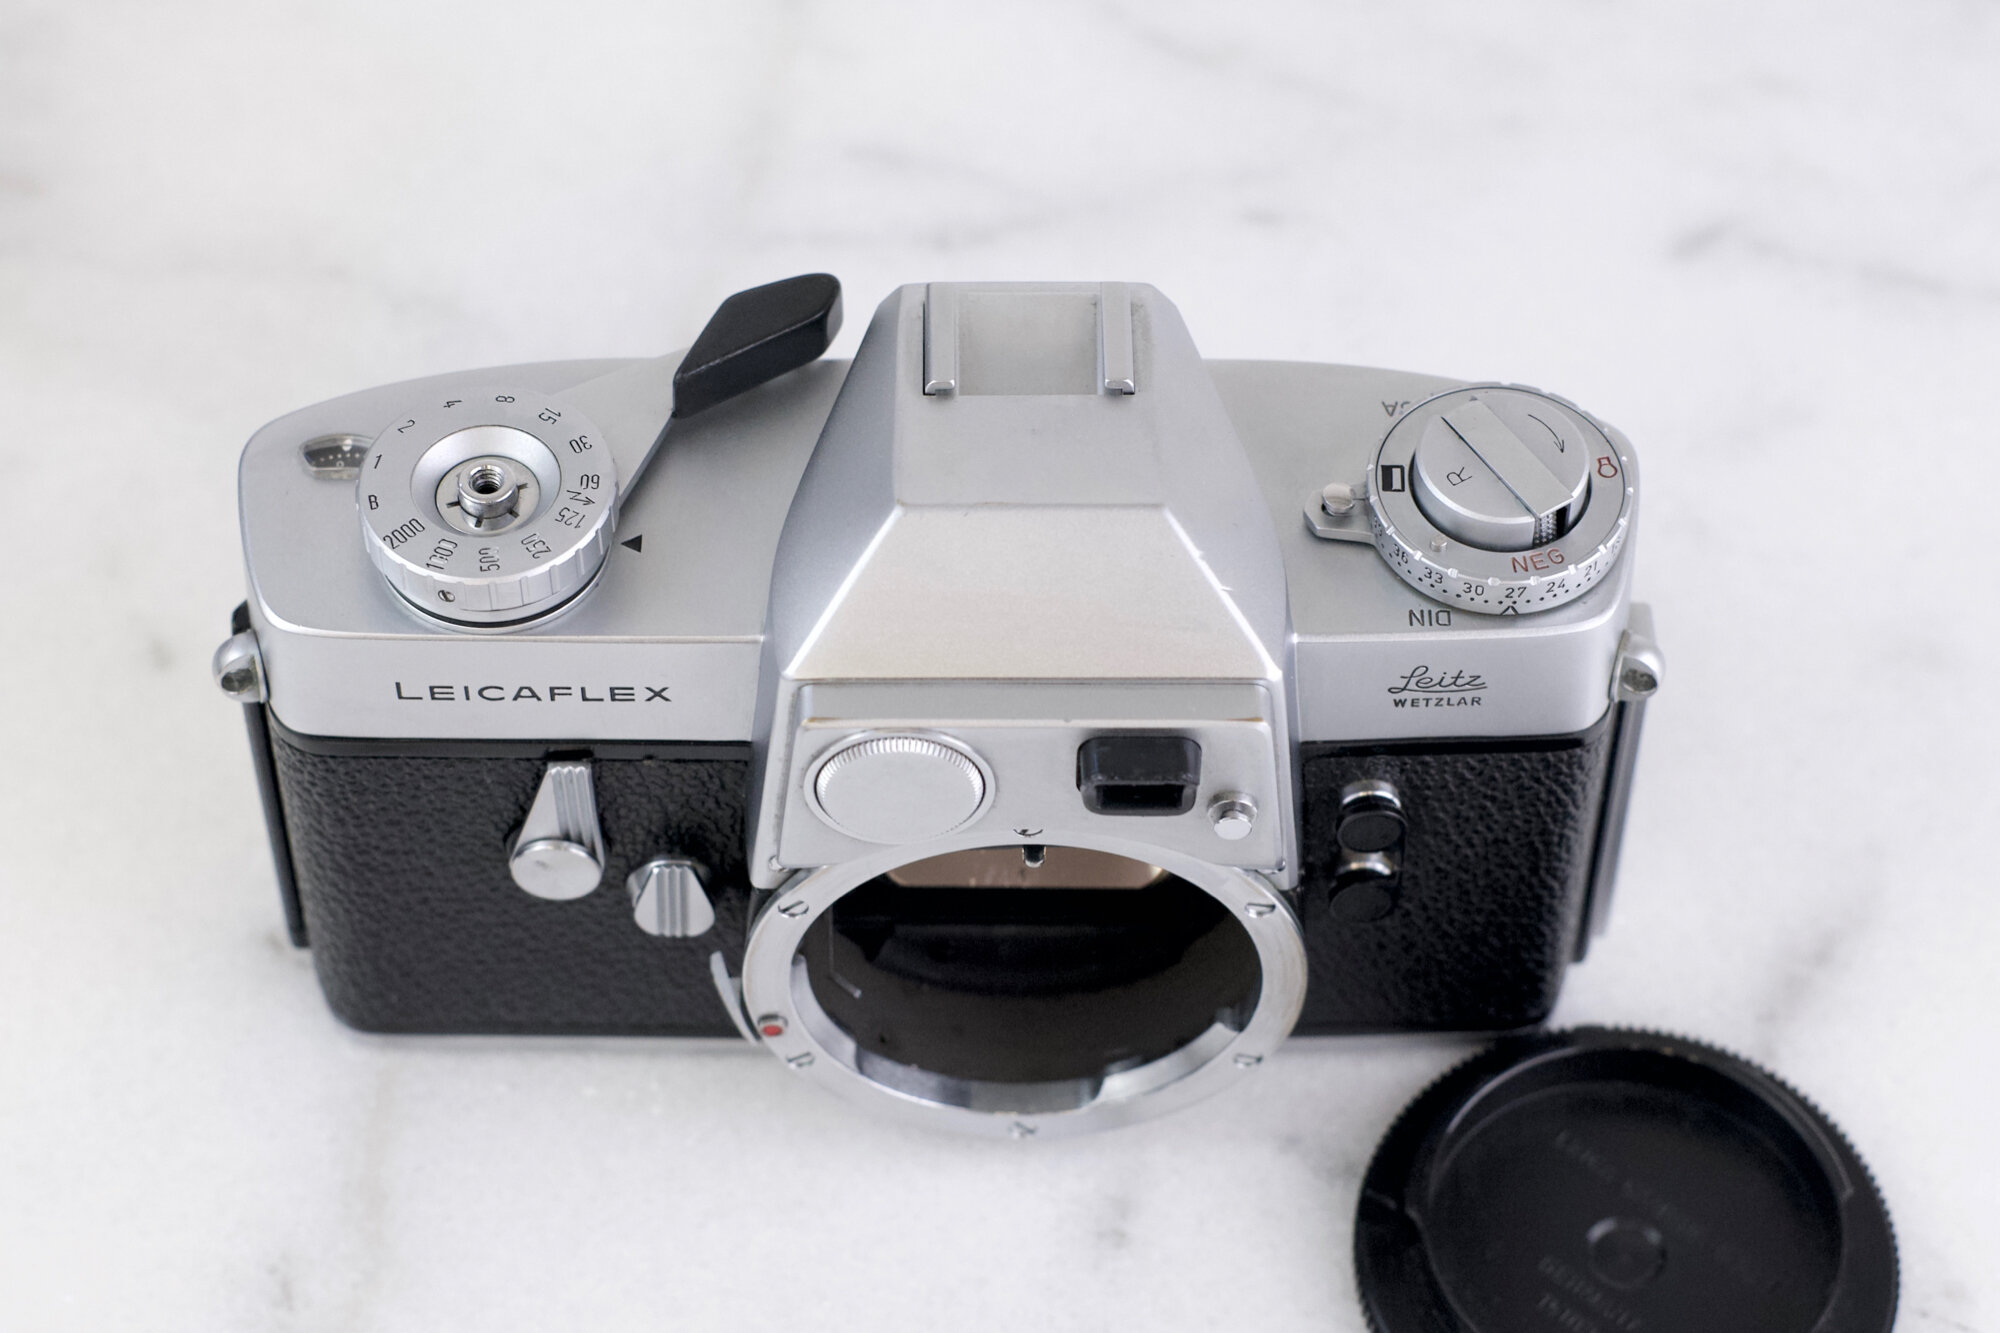 カメラ フィルムカメラ Leitz Leica Leicaflex with Leitz Wetzlar Body Cap - Fully 